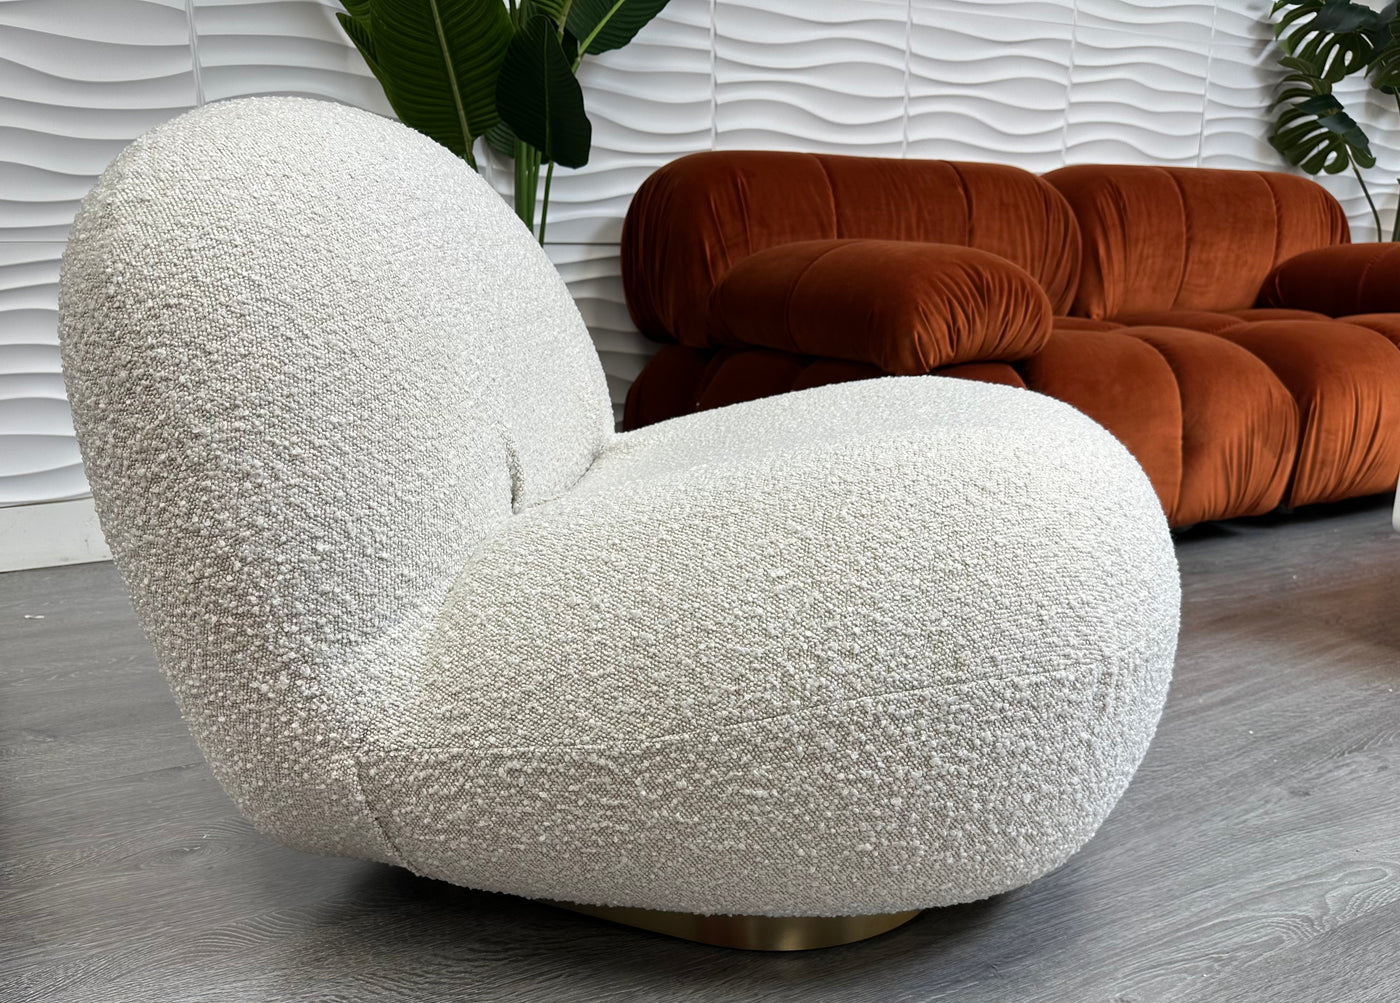 Cloud lounge chair